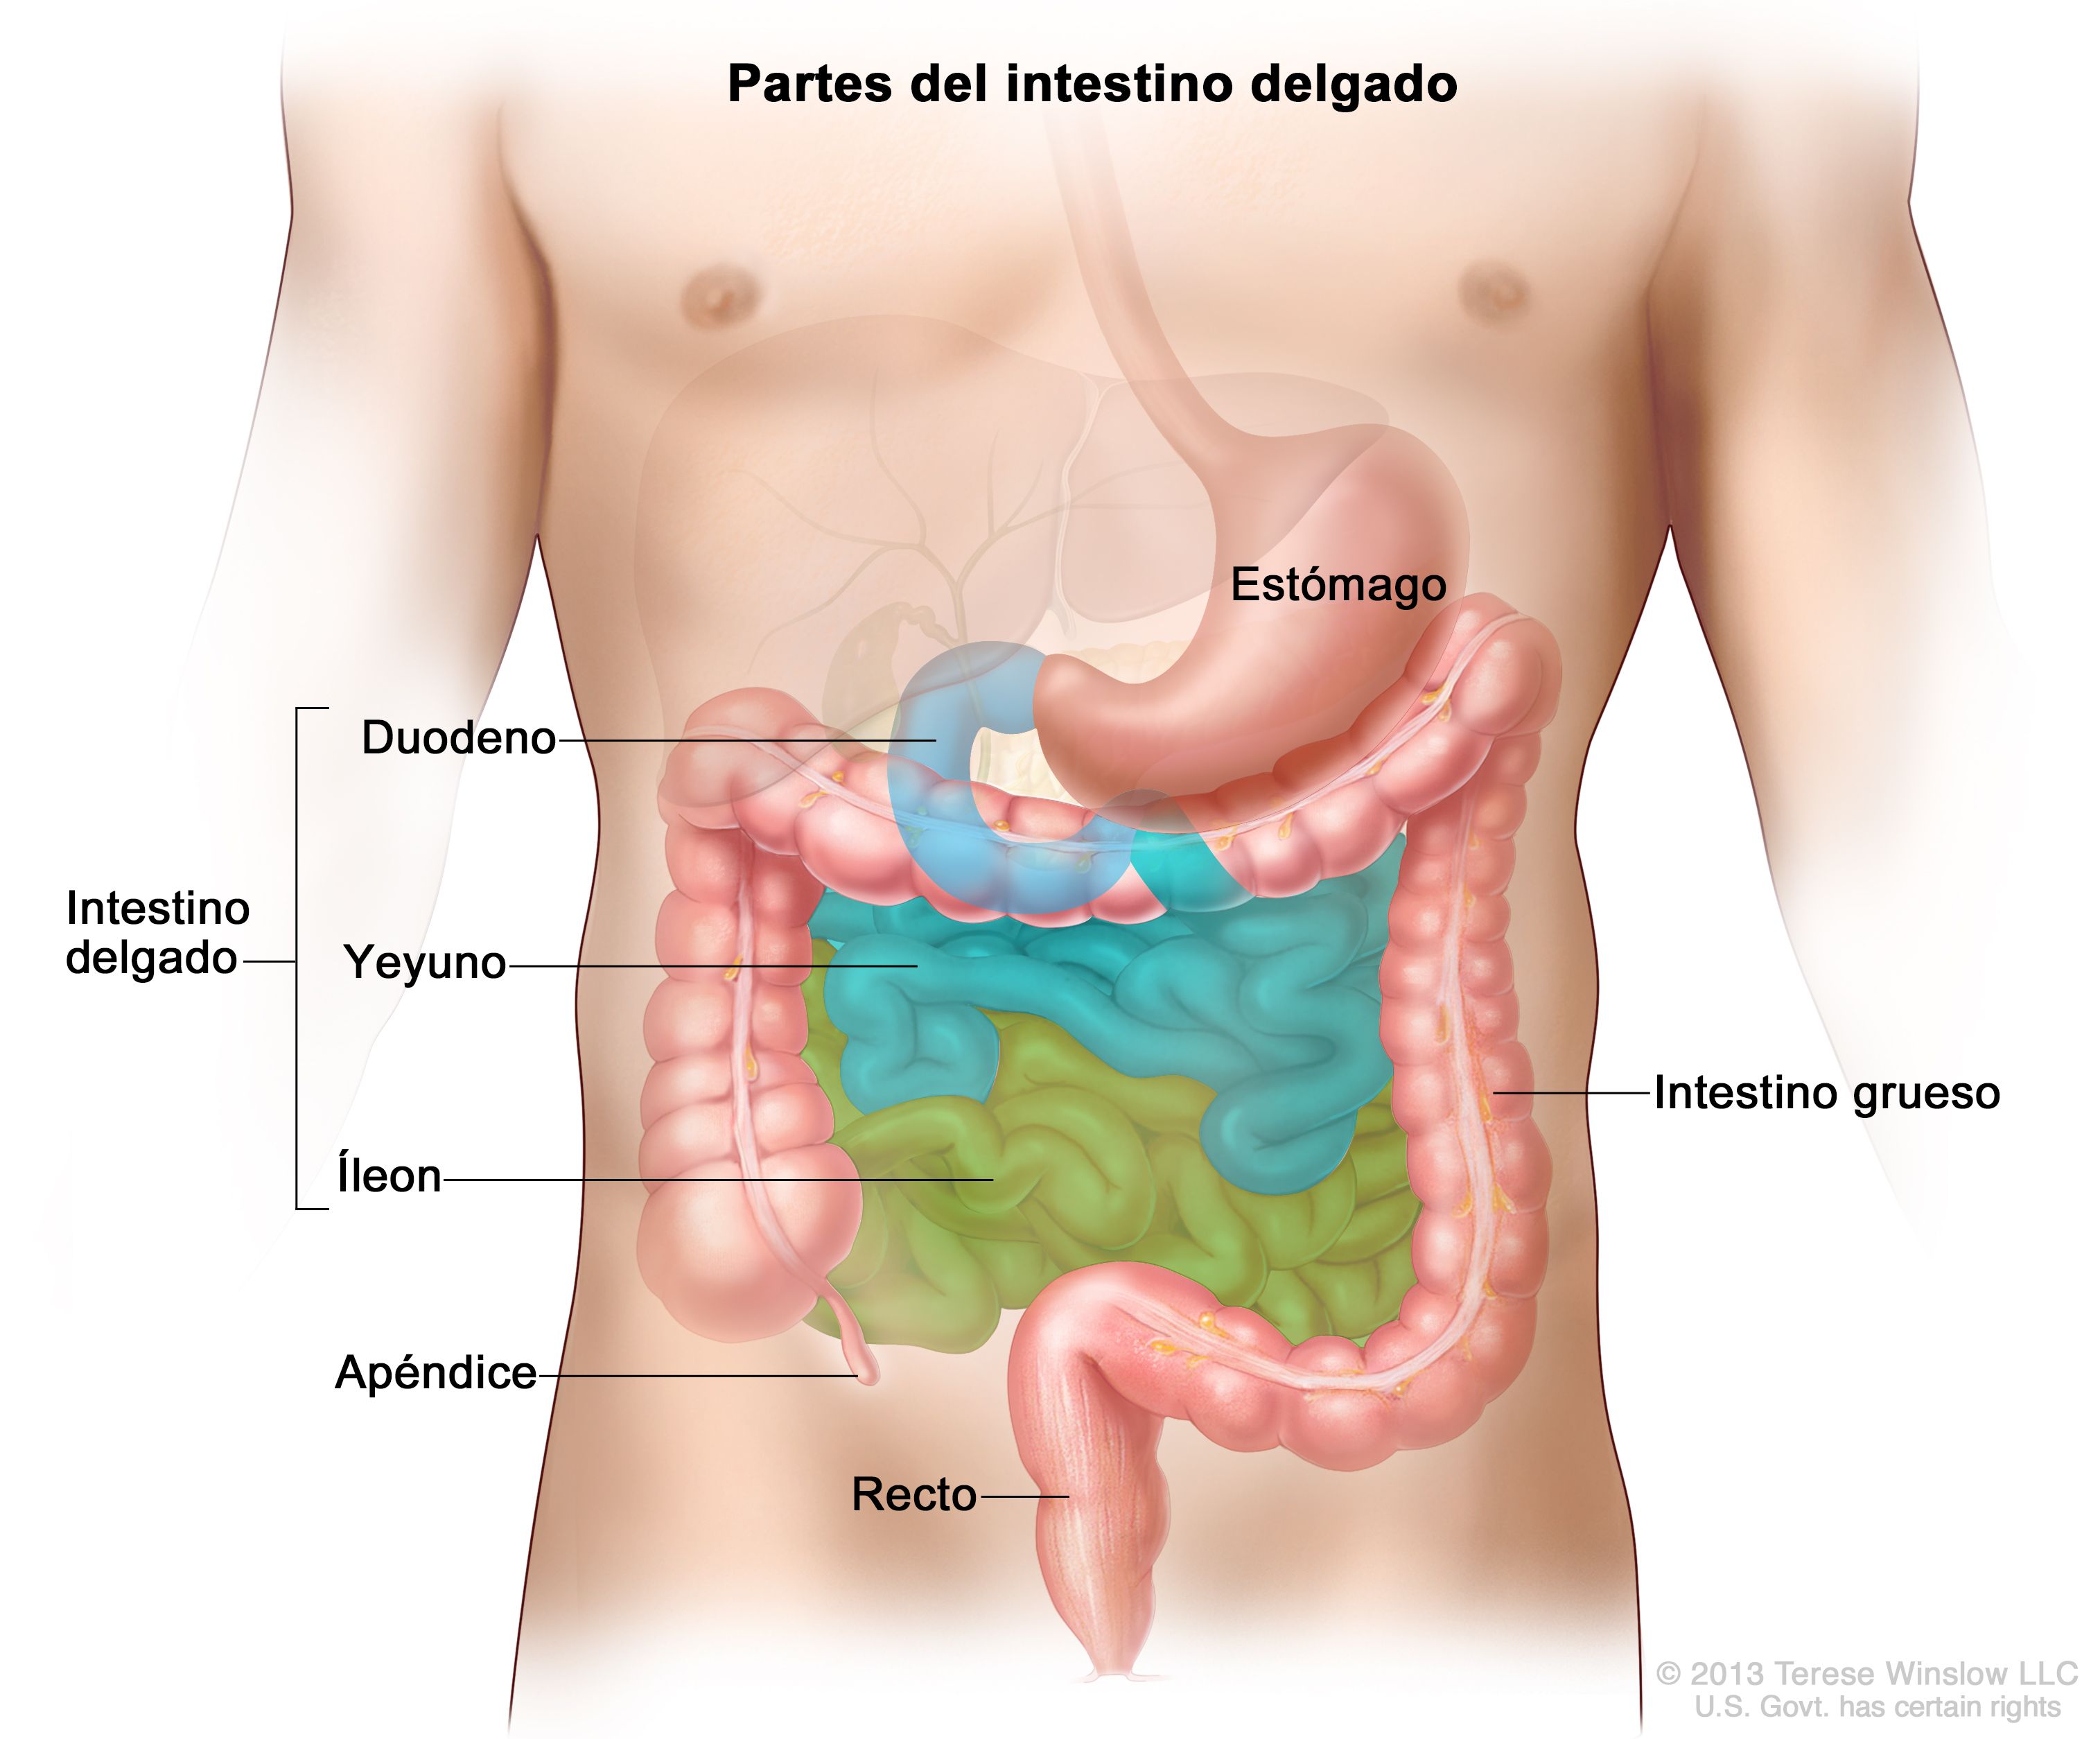 Definición de intestino delgado - Diccionario de cáncer del NCI - NCI